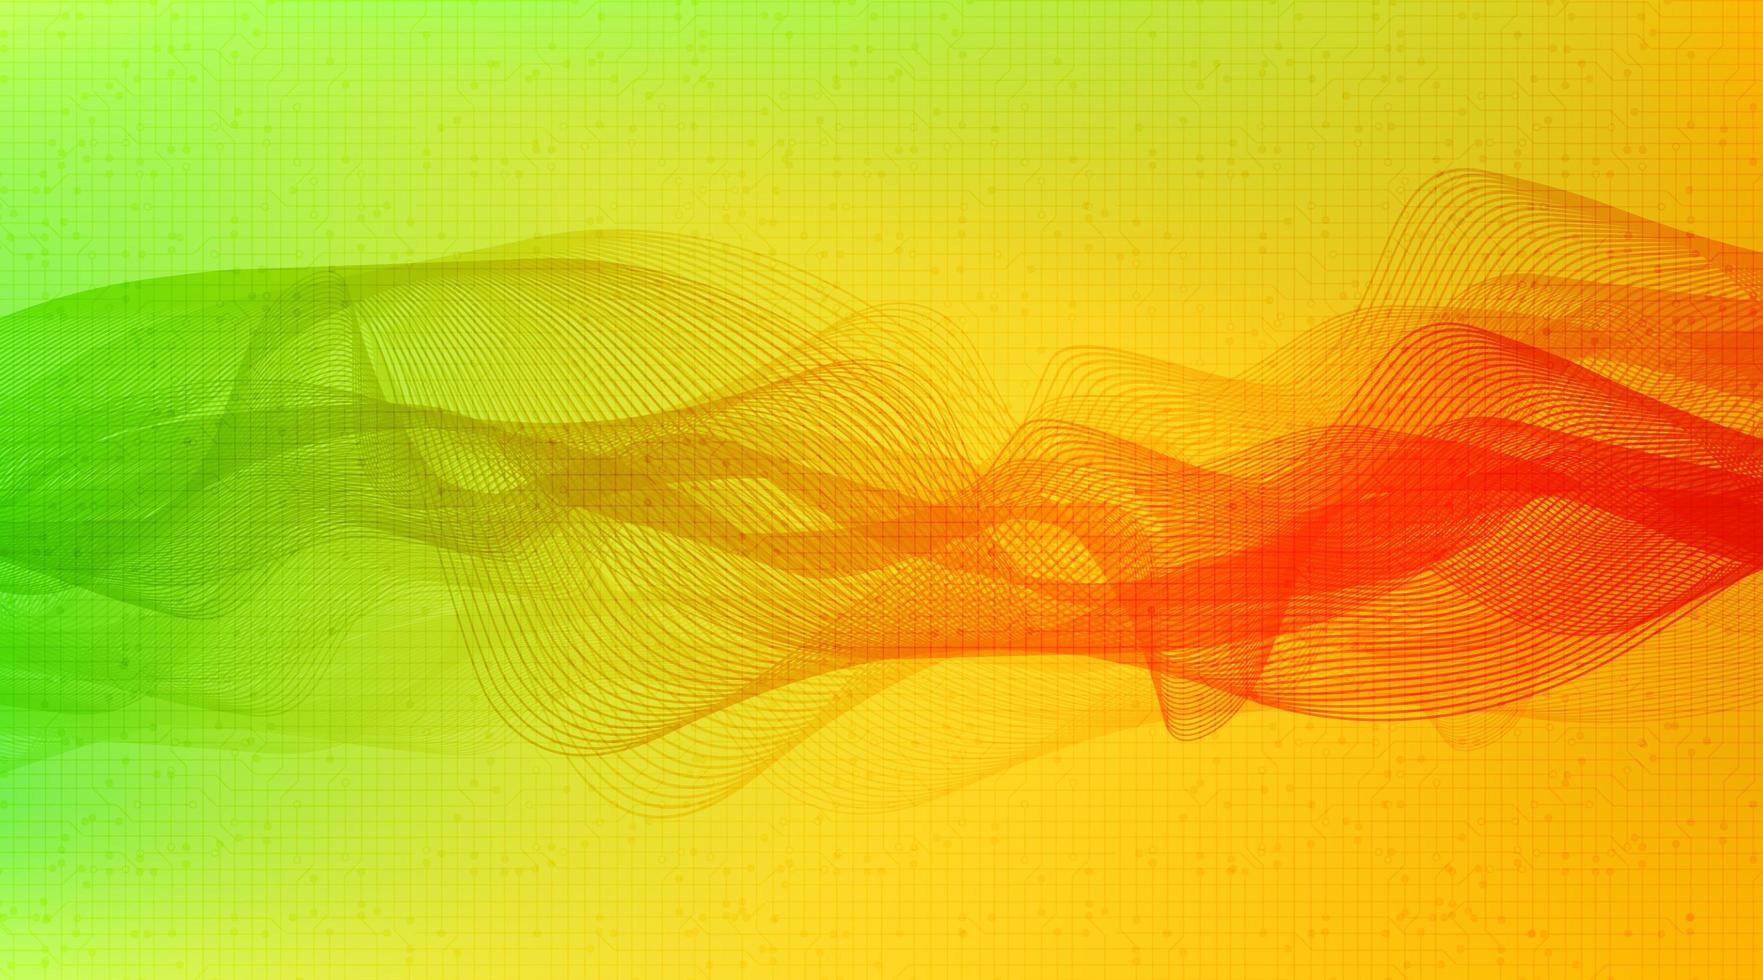 niedrige und hohe Richterskala der grünen und orange digitalen Schallwelle auf gelbem Hintergrund, Technologie- und Erdbebenwellendiagrammkonzept, Vektorillustration. vektor